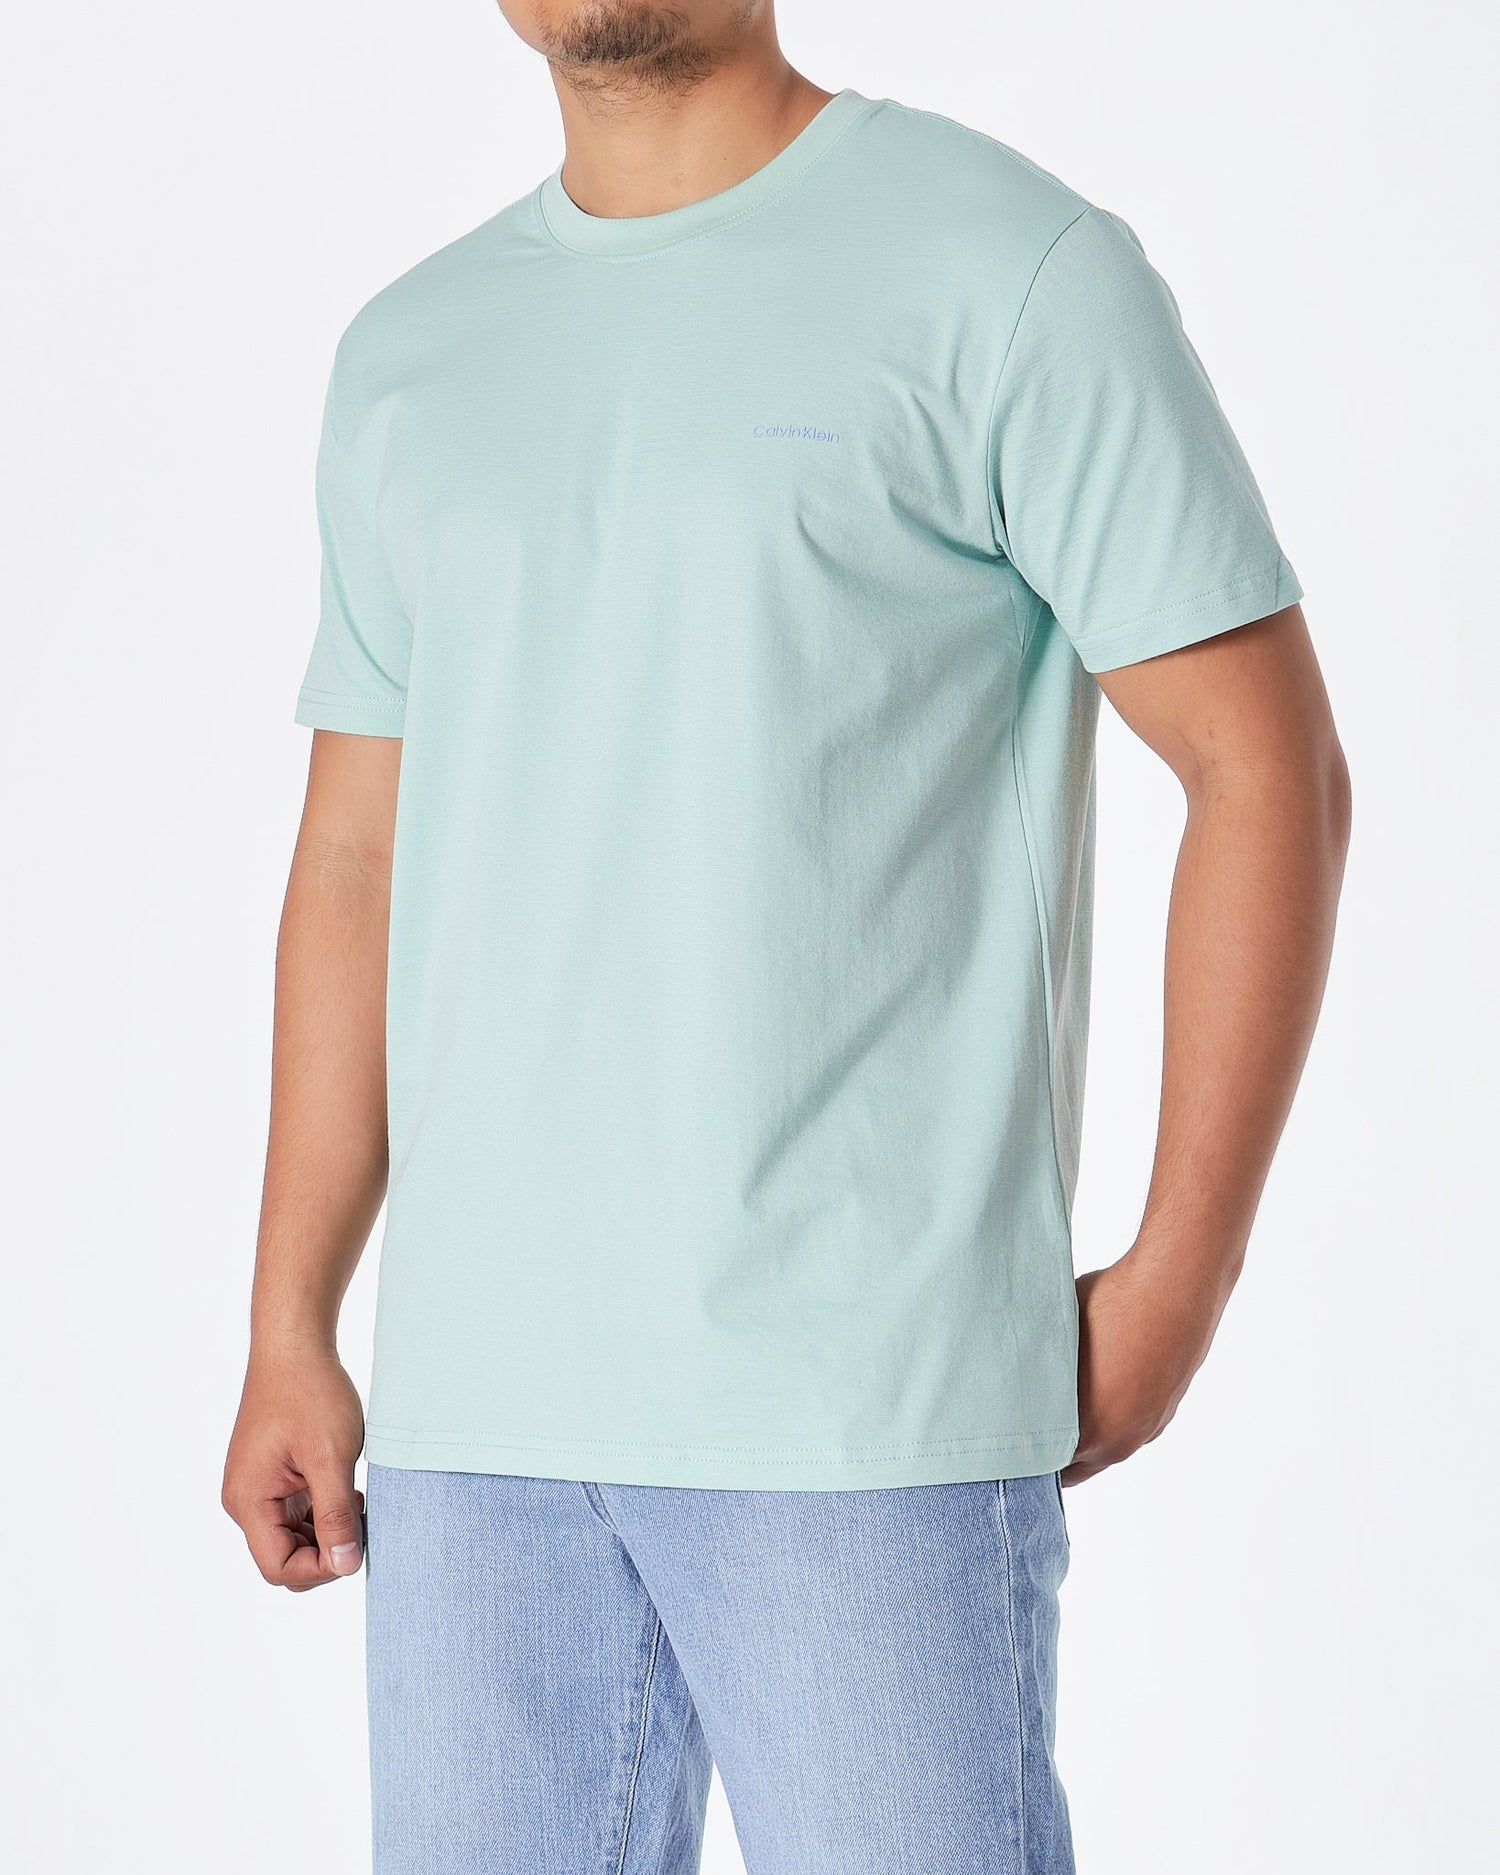 MOI OUTFIT-CK Plain Color Men Green T-Shirt 15.90